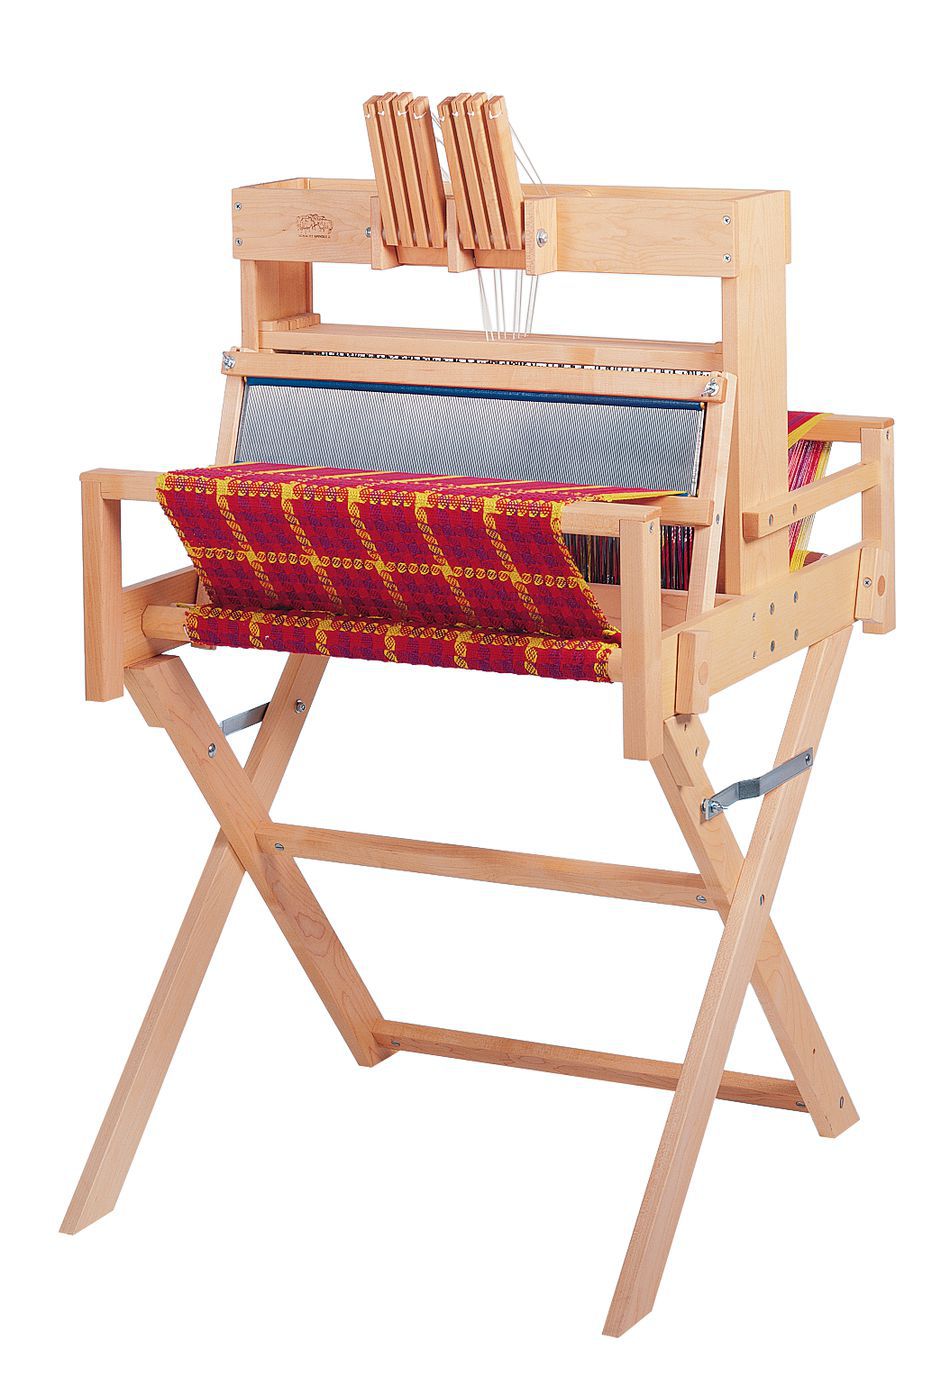 Weaving Equipment Schacht 15quot Table Loom Floor Stand